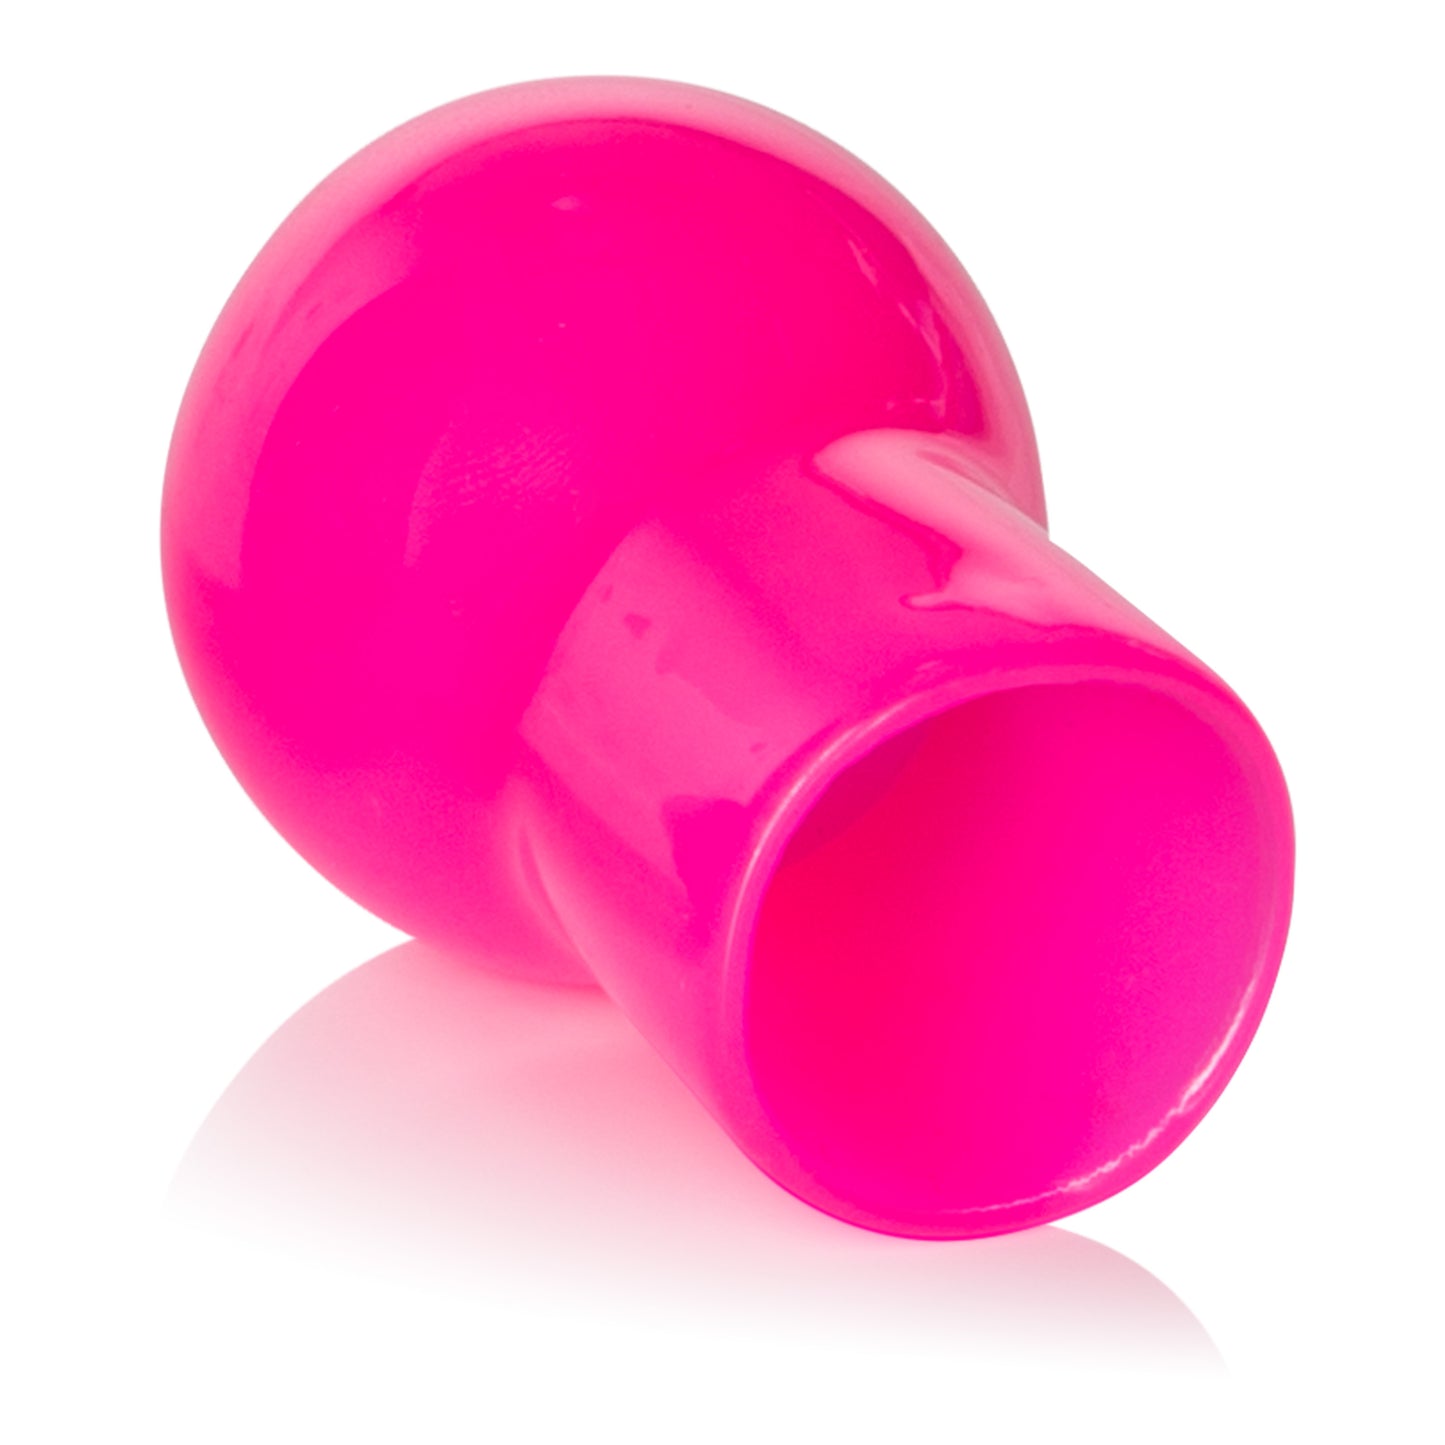 Nipple Play Advanced Nipple Suckers - Pink SE2644043